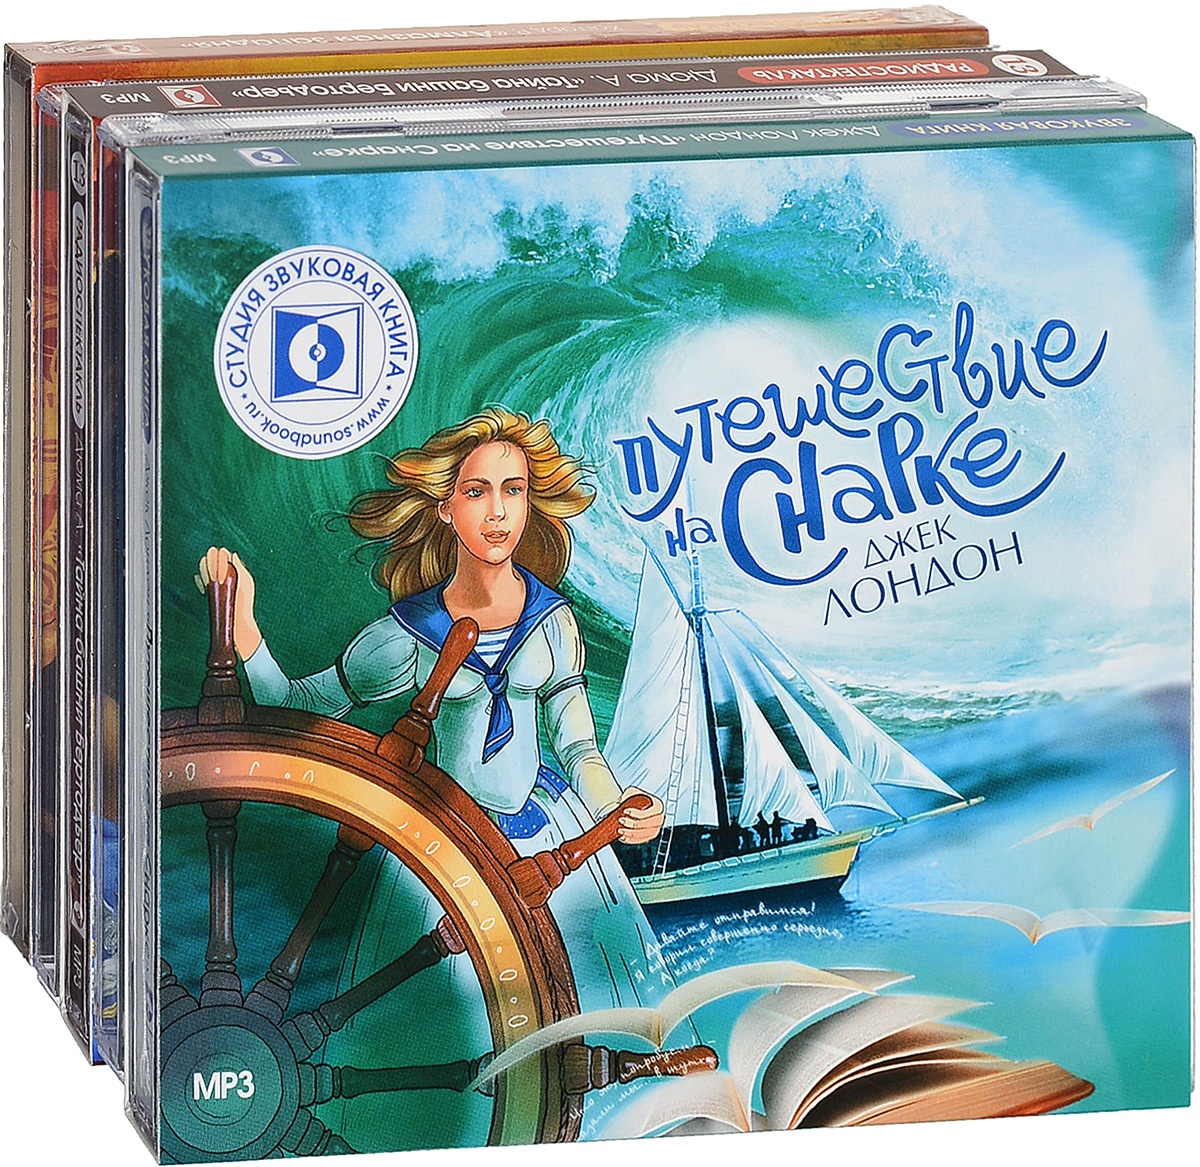 Книги про приключения для детей 12 лет. Тайна башни Бертодьер аудиокнига. Аудиокниги 5 лет. Аудиокниги от 5 до 10 лет.